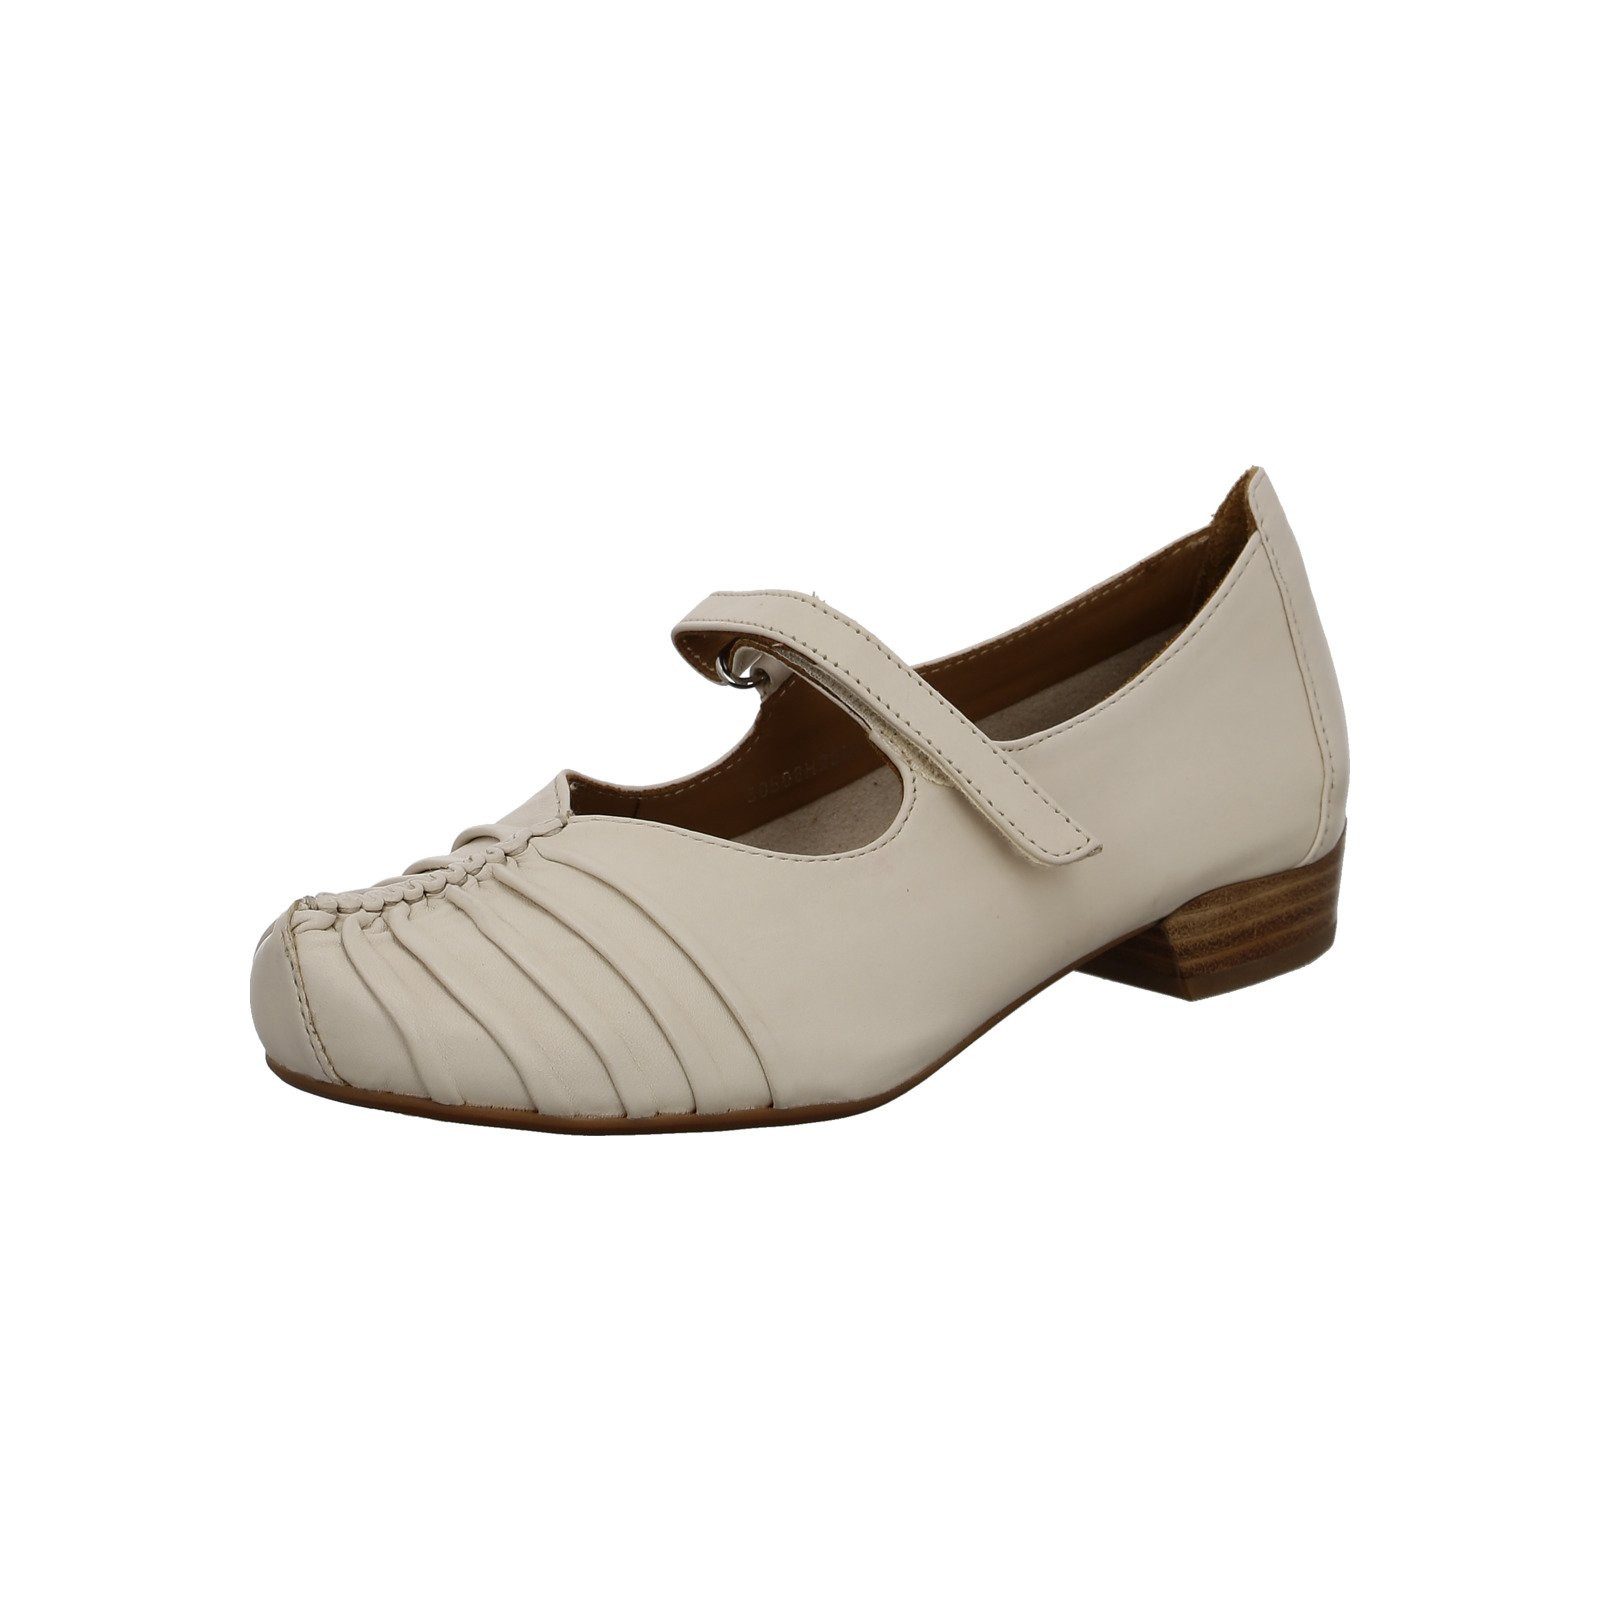 Everybody Galega - Damen Schuhe Pumps Ballerina Glattleder beige